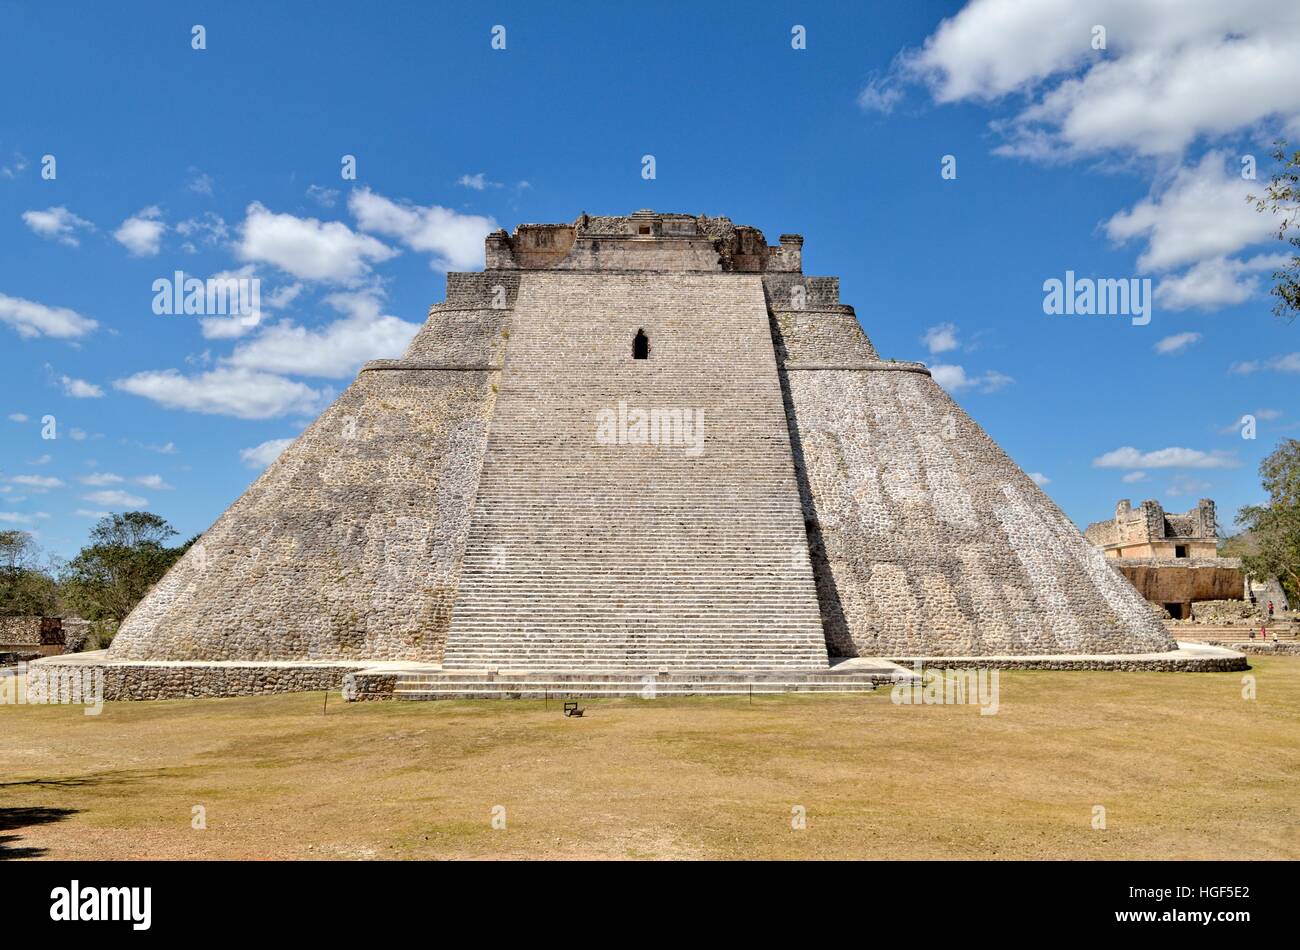 Piramide del Adivino, Pyramid of the Magician, ancient Mayan city of Uxmal, Yucatan, Mexico Stock Photo